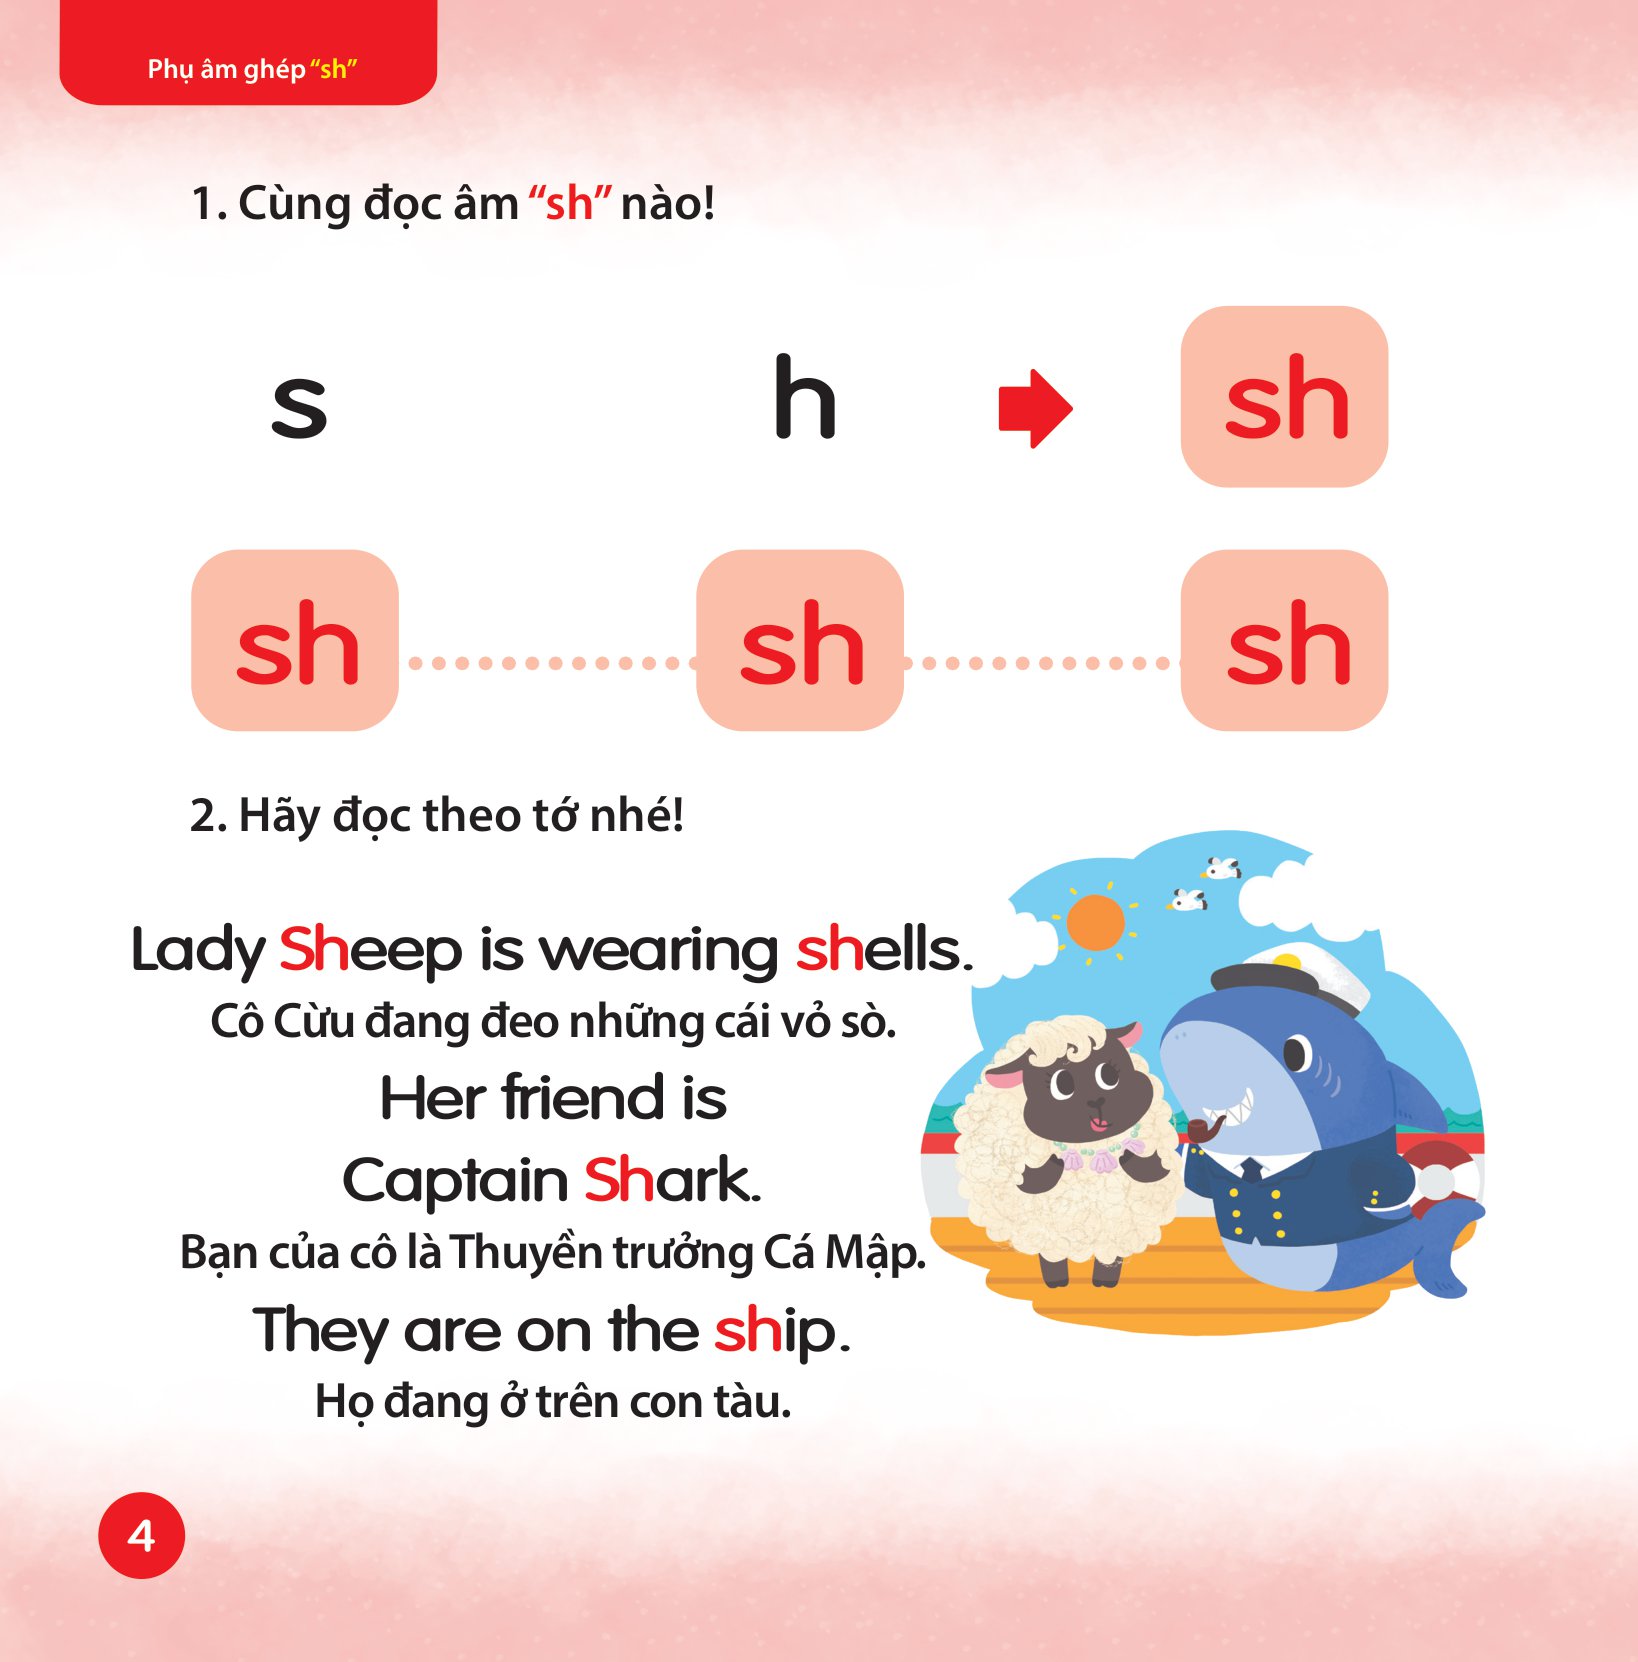 Cùng Con Học Ngữ Âm Tiếng Anh Qua 3 Cấp Độ - Phụ Âm Ghép PDF